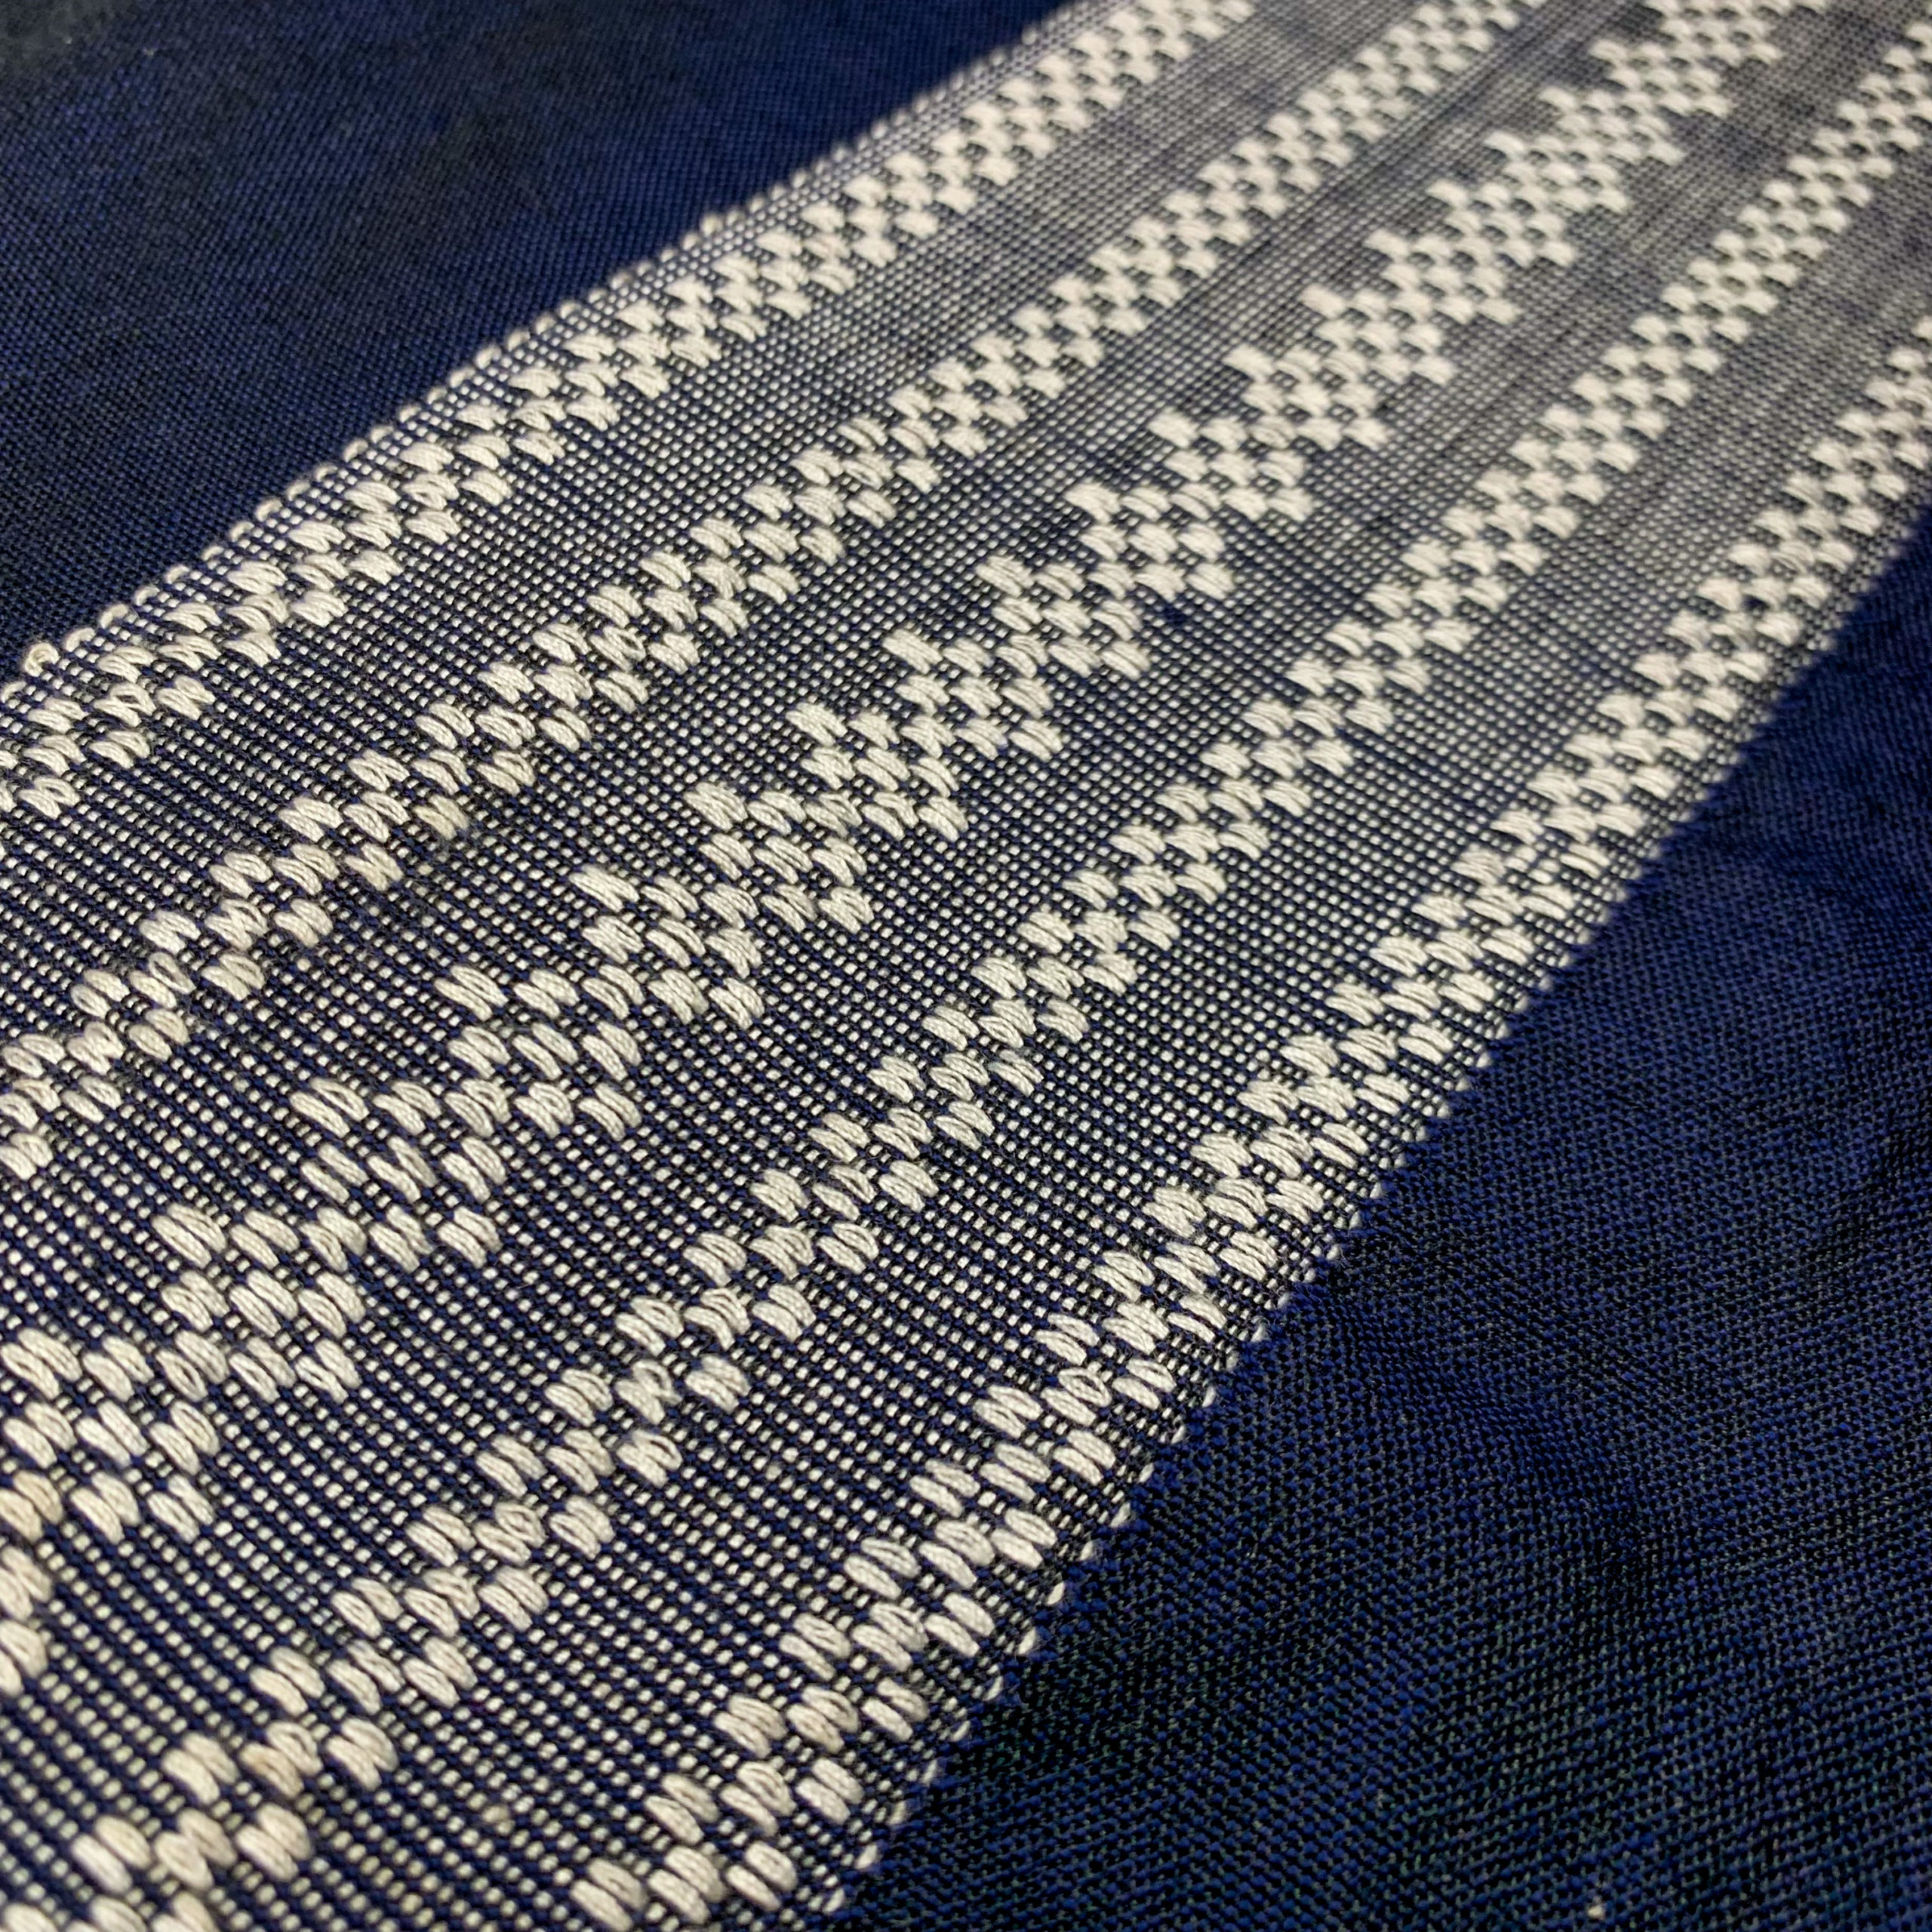 Panublix hablon weave